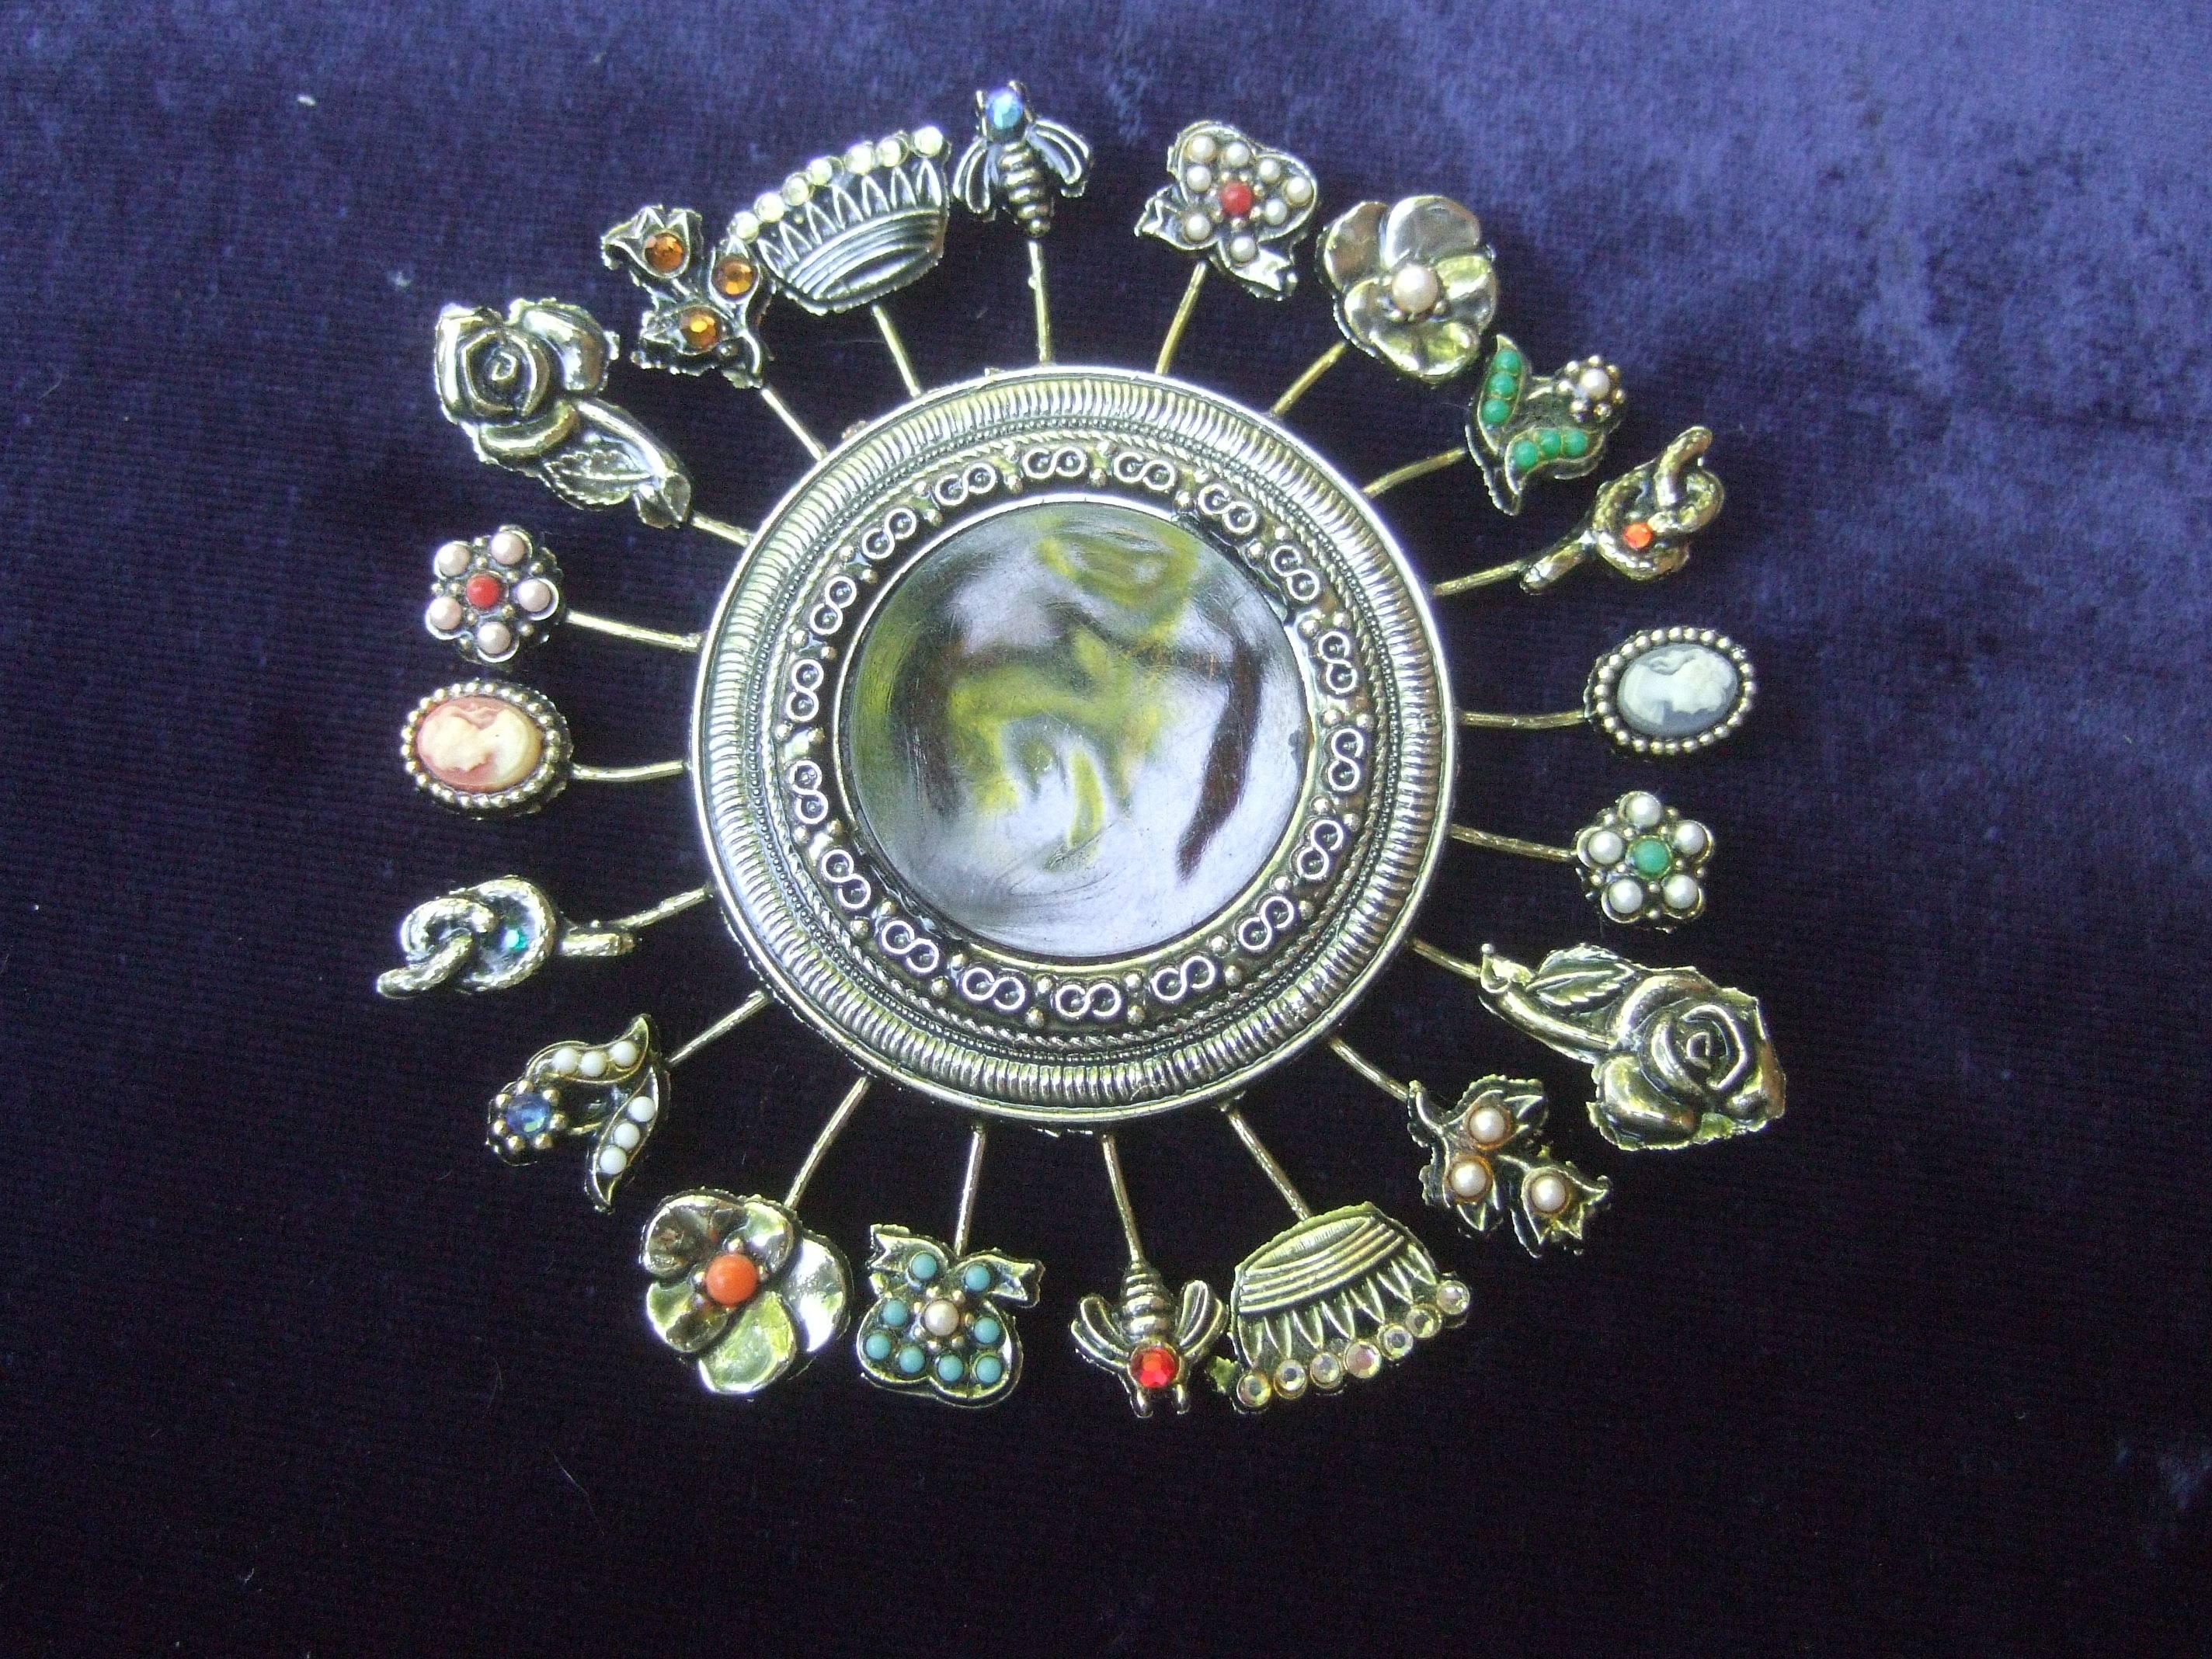 Massive Circular Medallion Lucite Intaglio Brooch circa 1970s 1